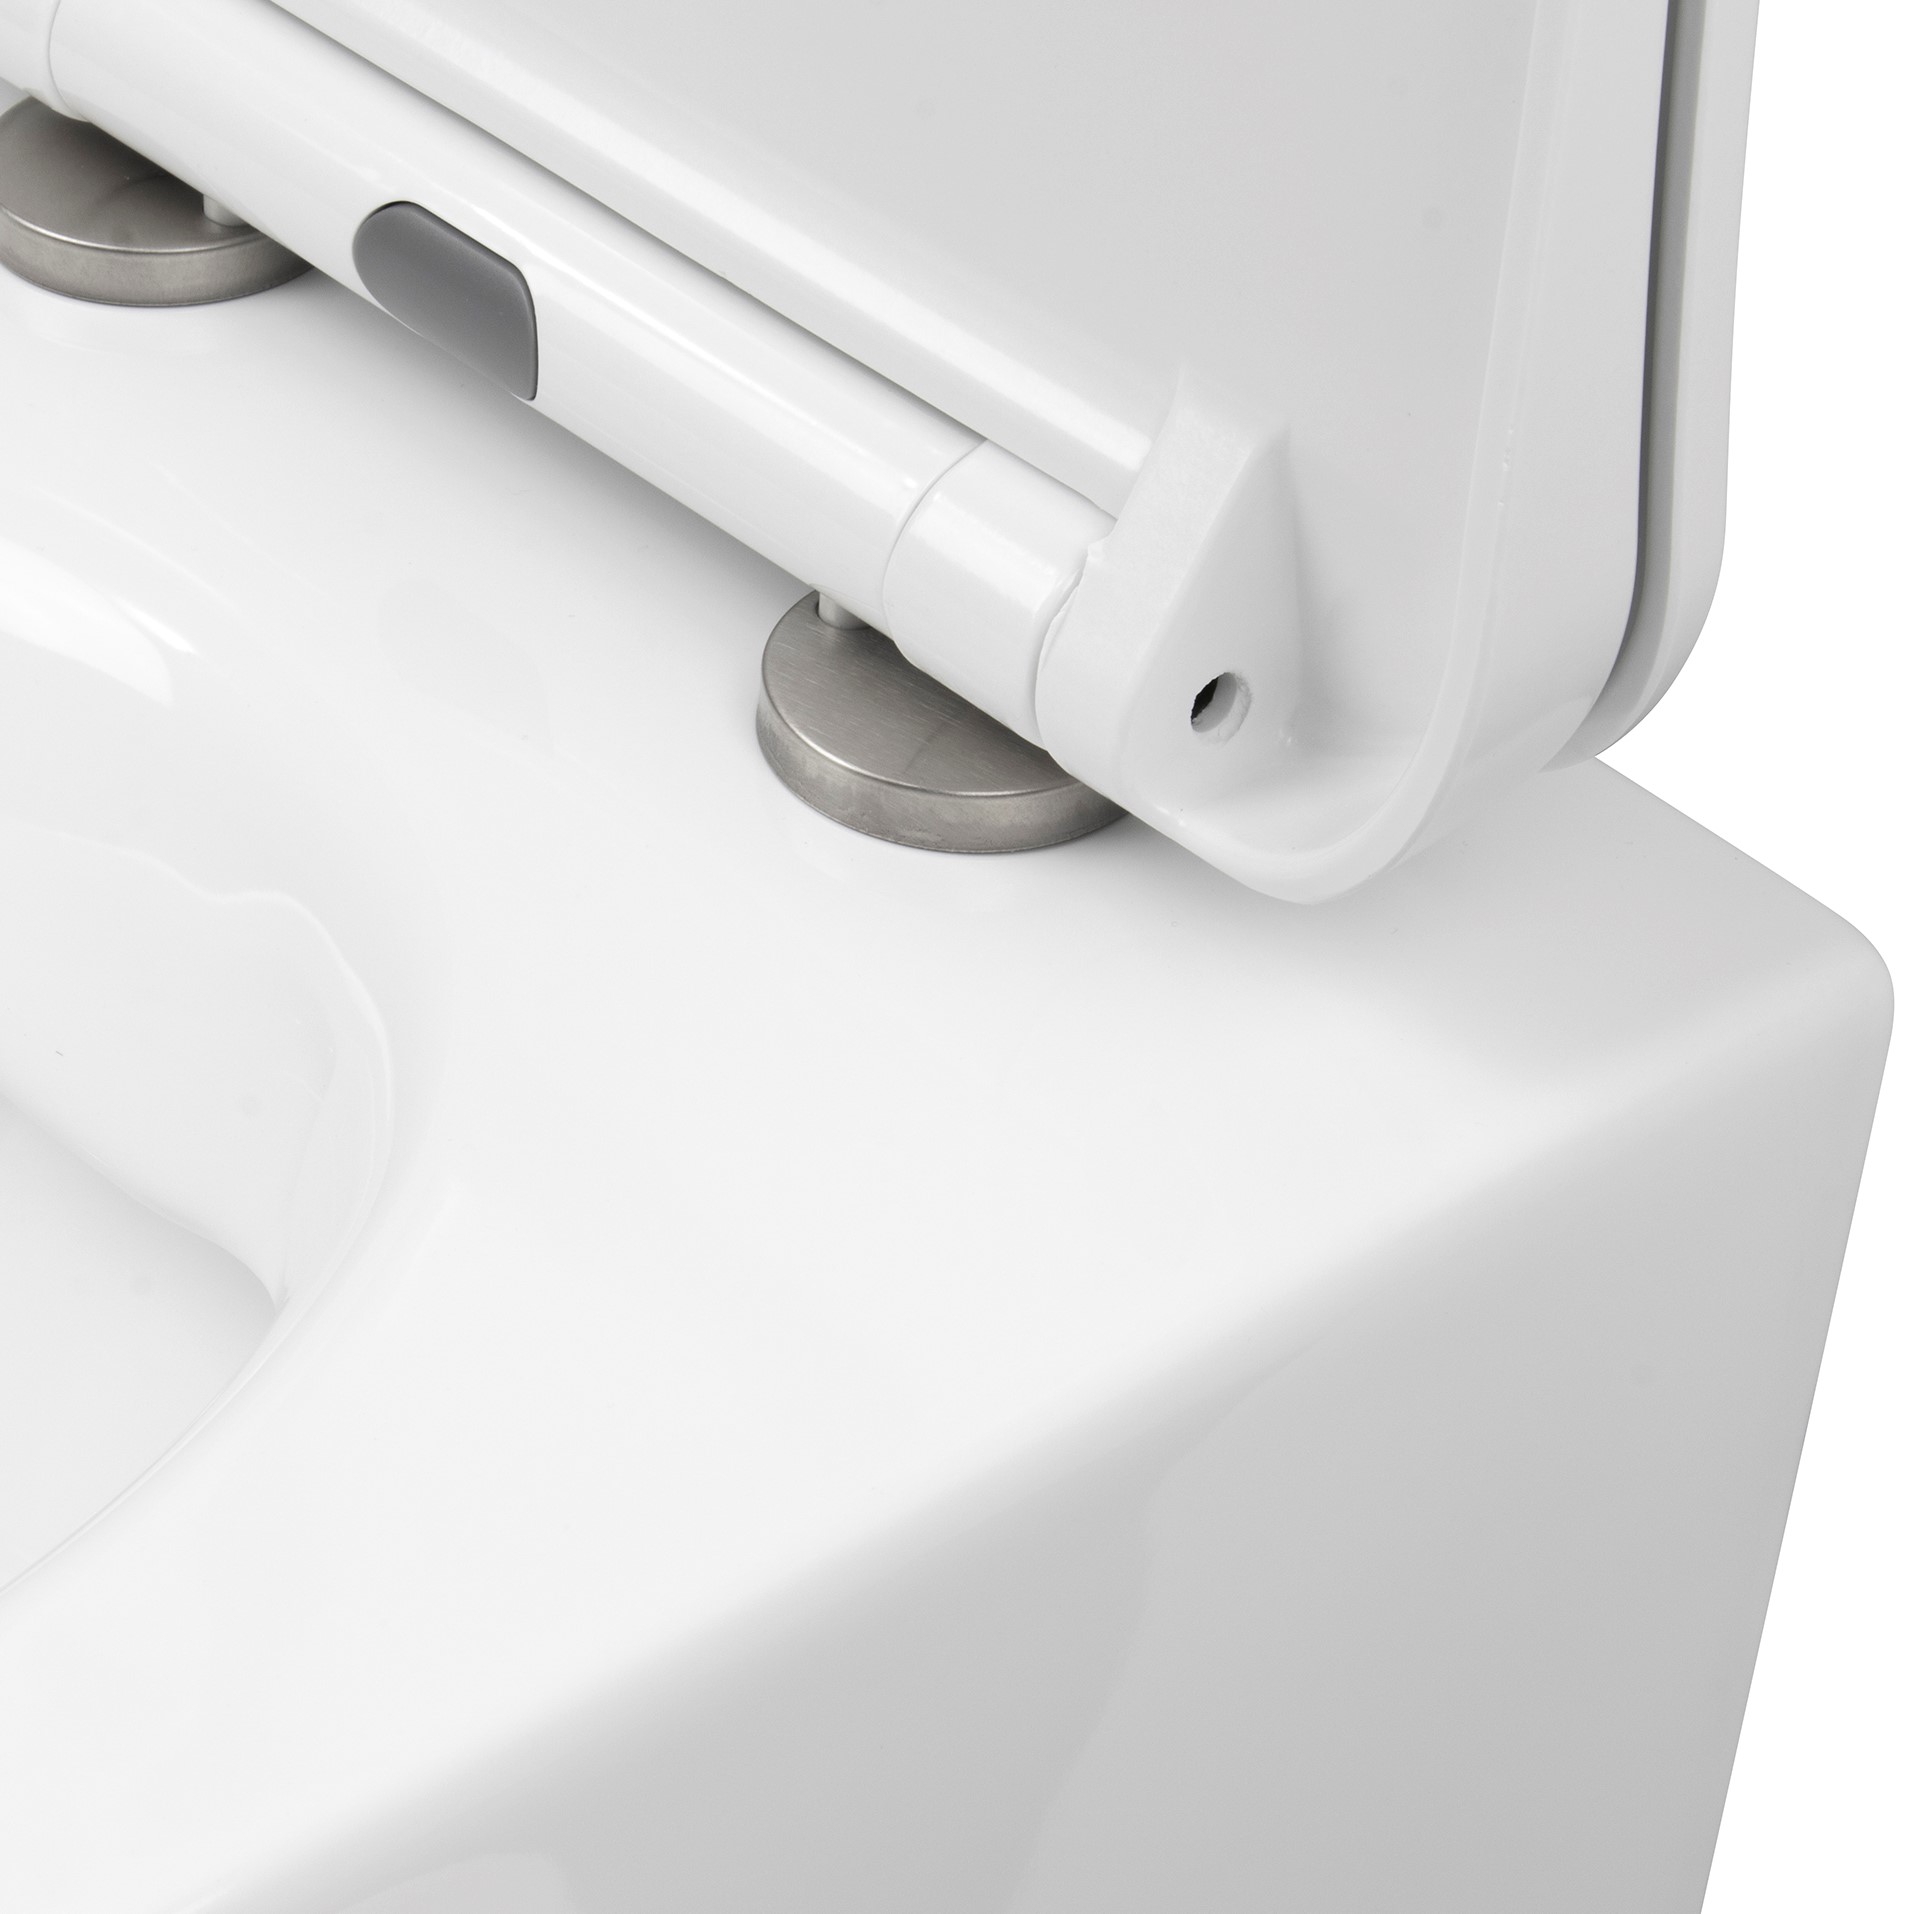 Design Hänge WC NERA spülrandlose Toilette inkl. WC Sitz mit Softclose Absenkautomatik + abnehmbar in Weiß